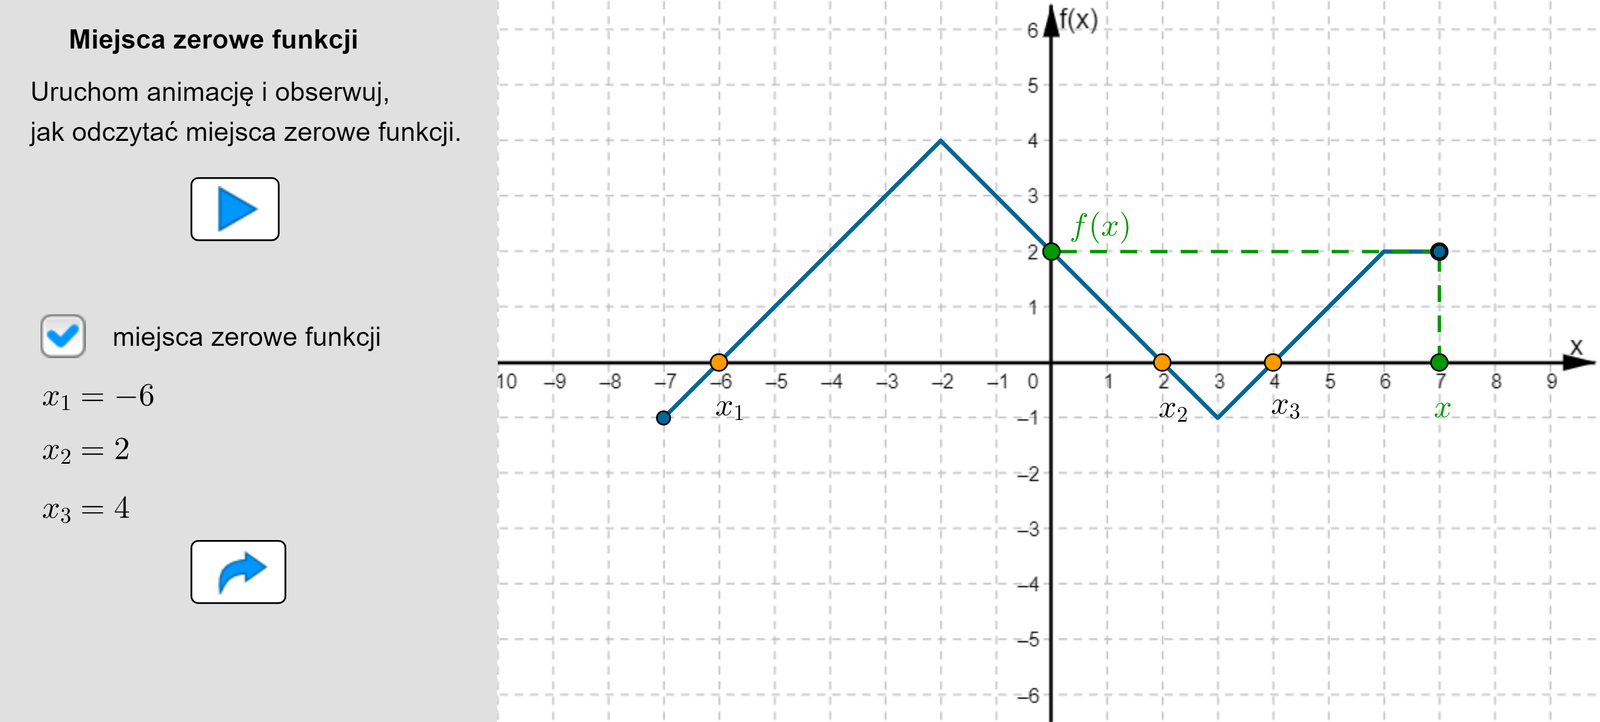 Aplet pokazuje jak poruszając się po wykresie funkcji odczytać jej miejsca zerowe, czyli punkt przecięcia funkcji z osią OX. Dla przykładu rozważmy funkcję liniową daną wzorem f(x)=2x, której dziedziną jest zbiór domknięty od minus pięciu do pięciu. Argumenty, dla których wykres funkcji przecina się z osią X to argumenty, dla których funkcja przyjmuje wartość zero. W tym przypadku taki argument to x=0.